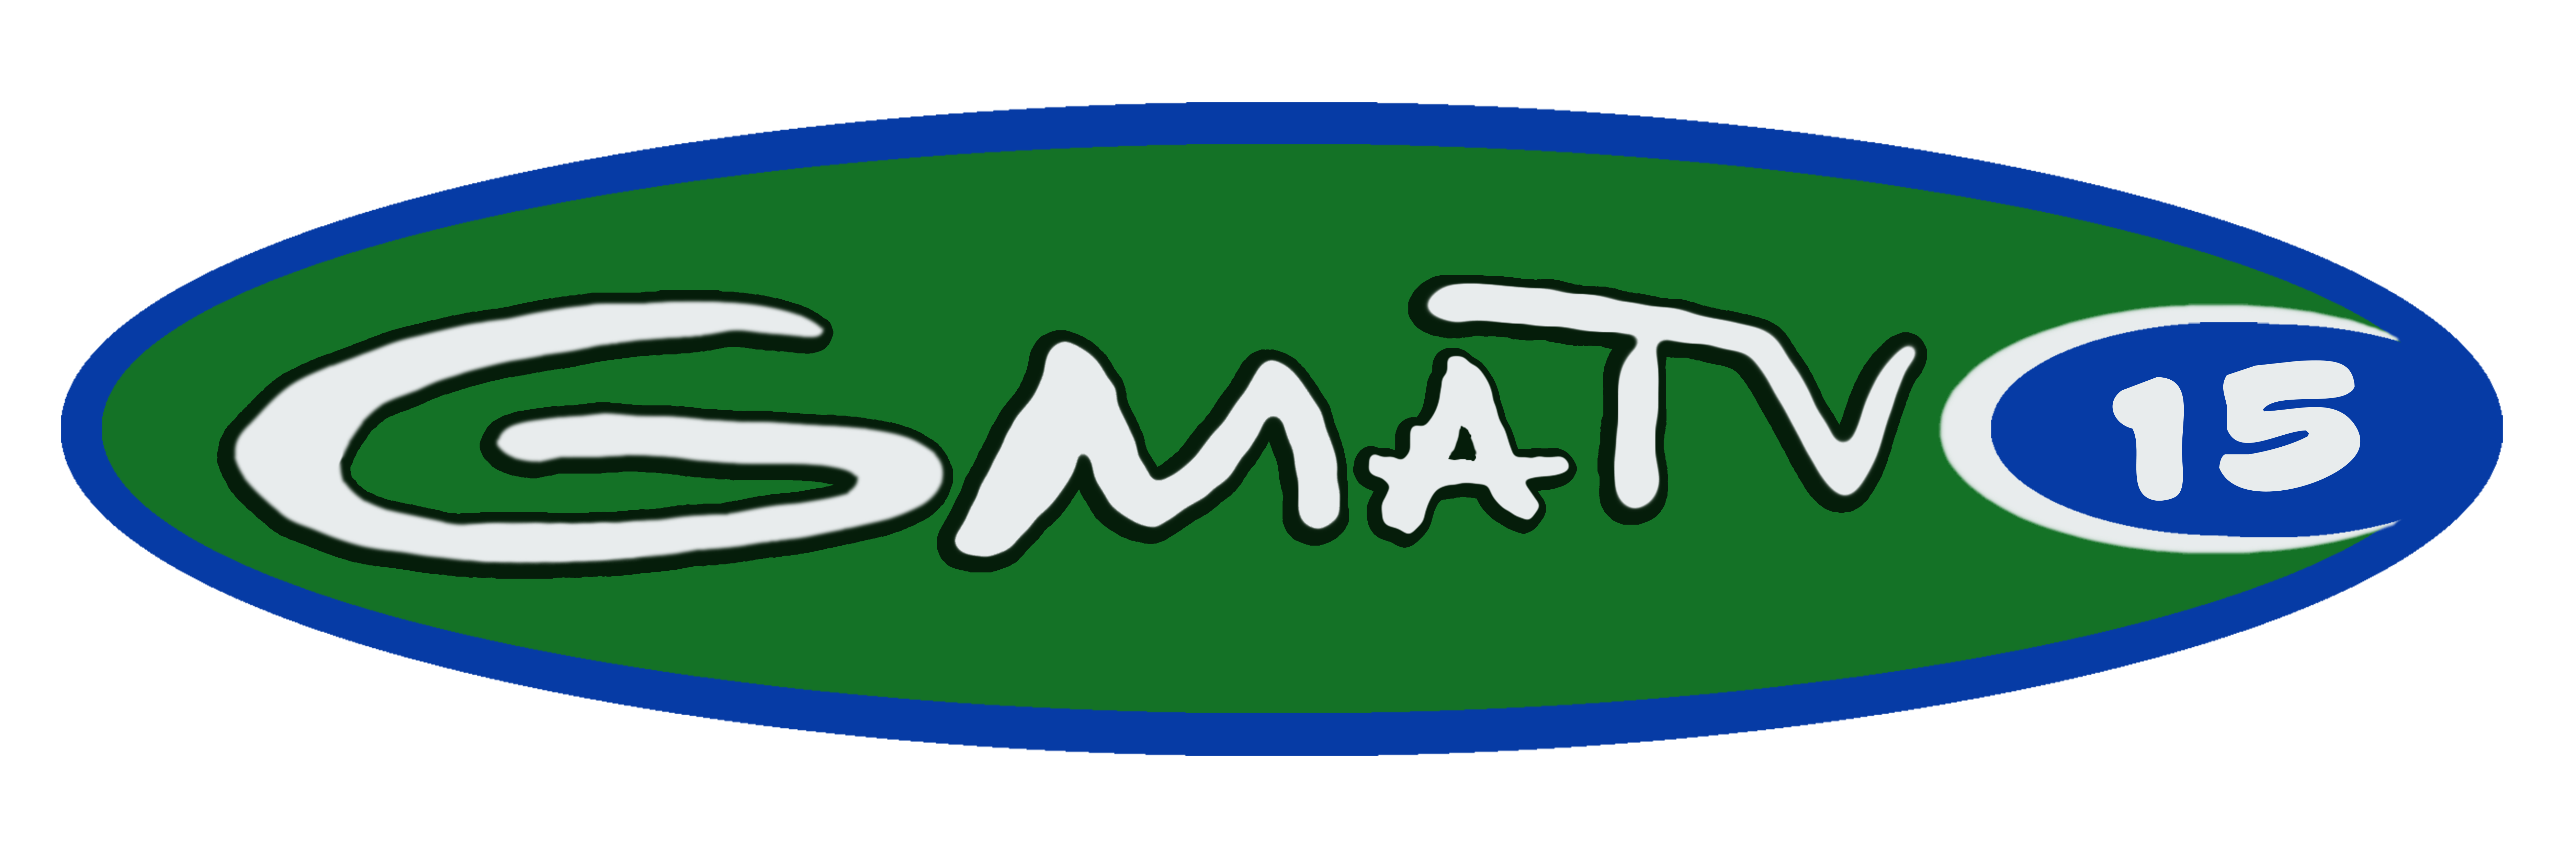 GMATV - GMATV VOD Player - organization logo